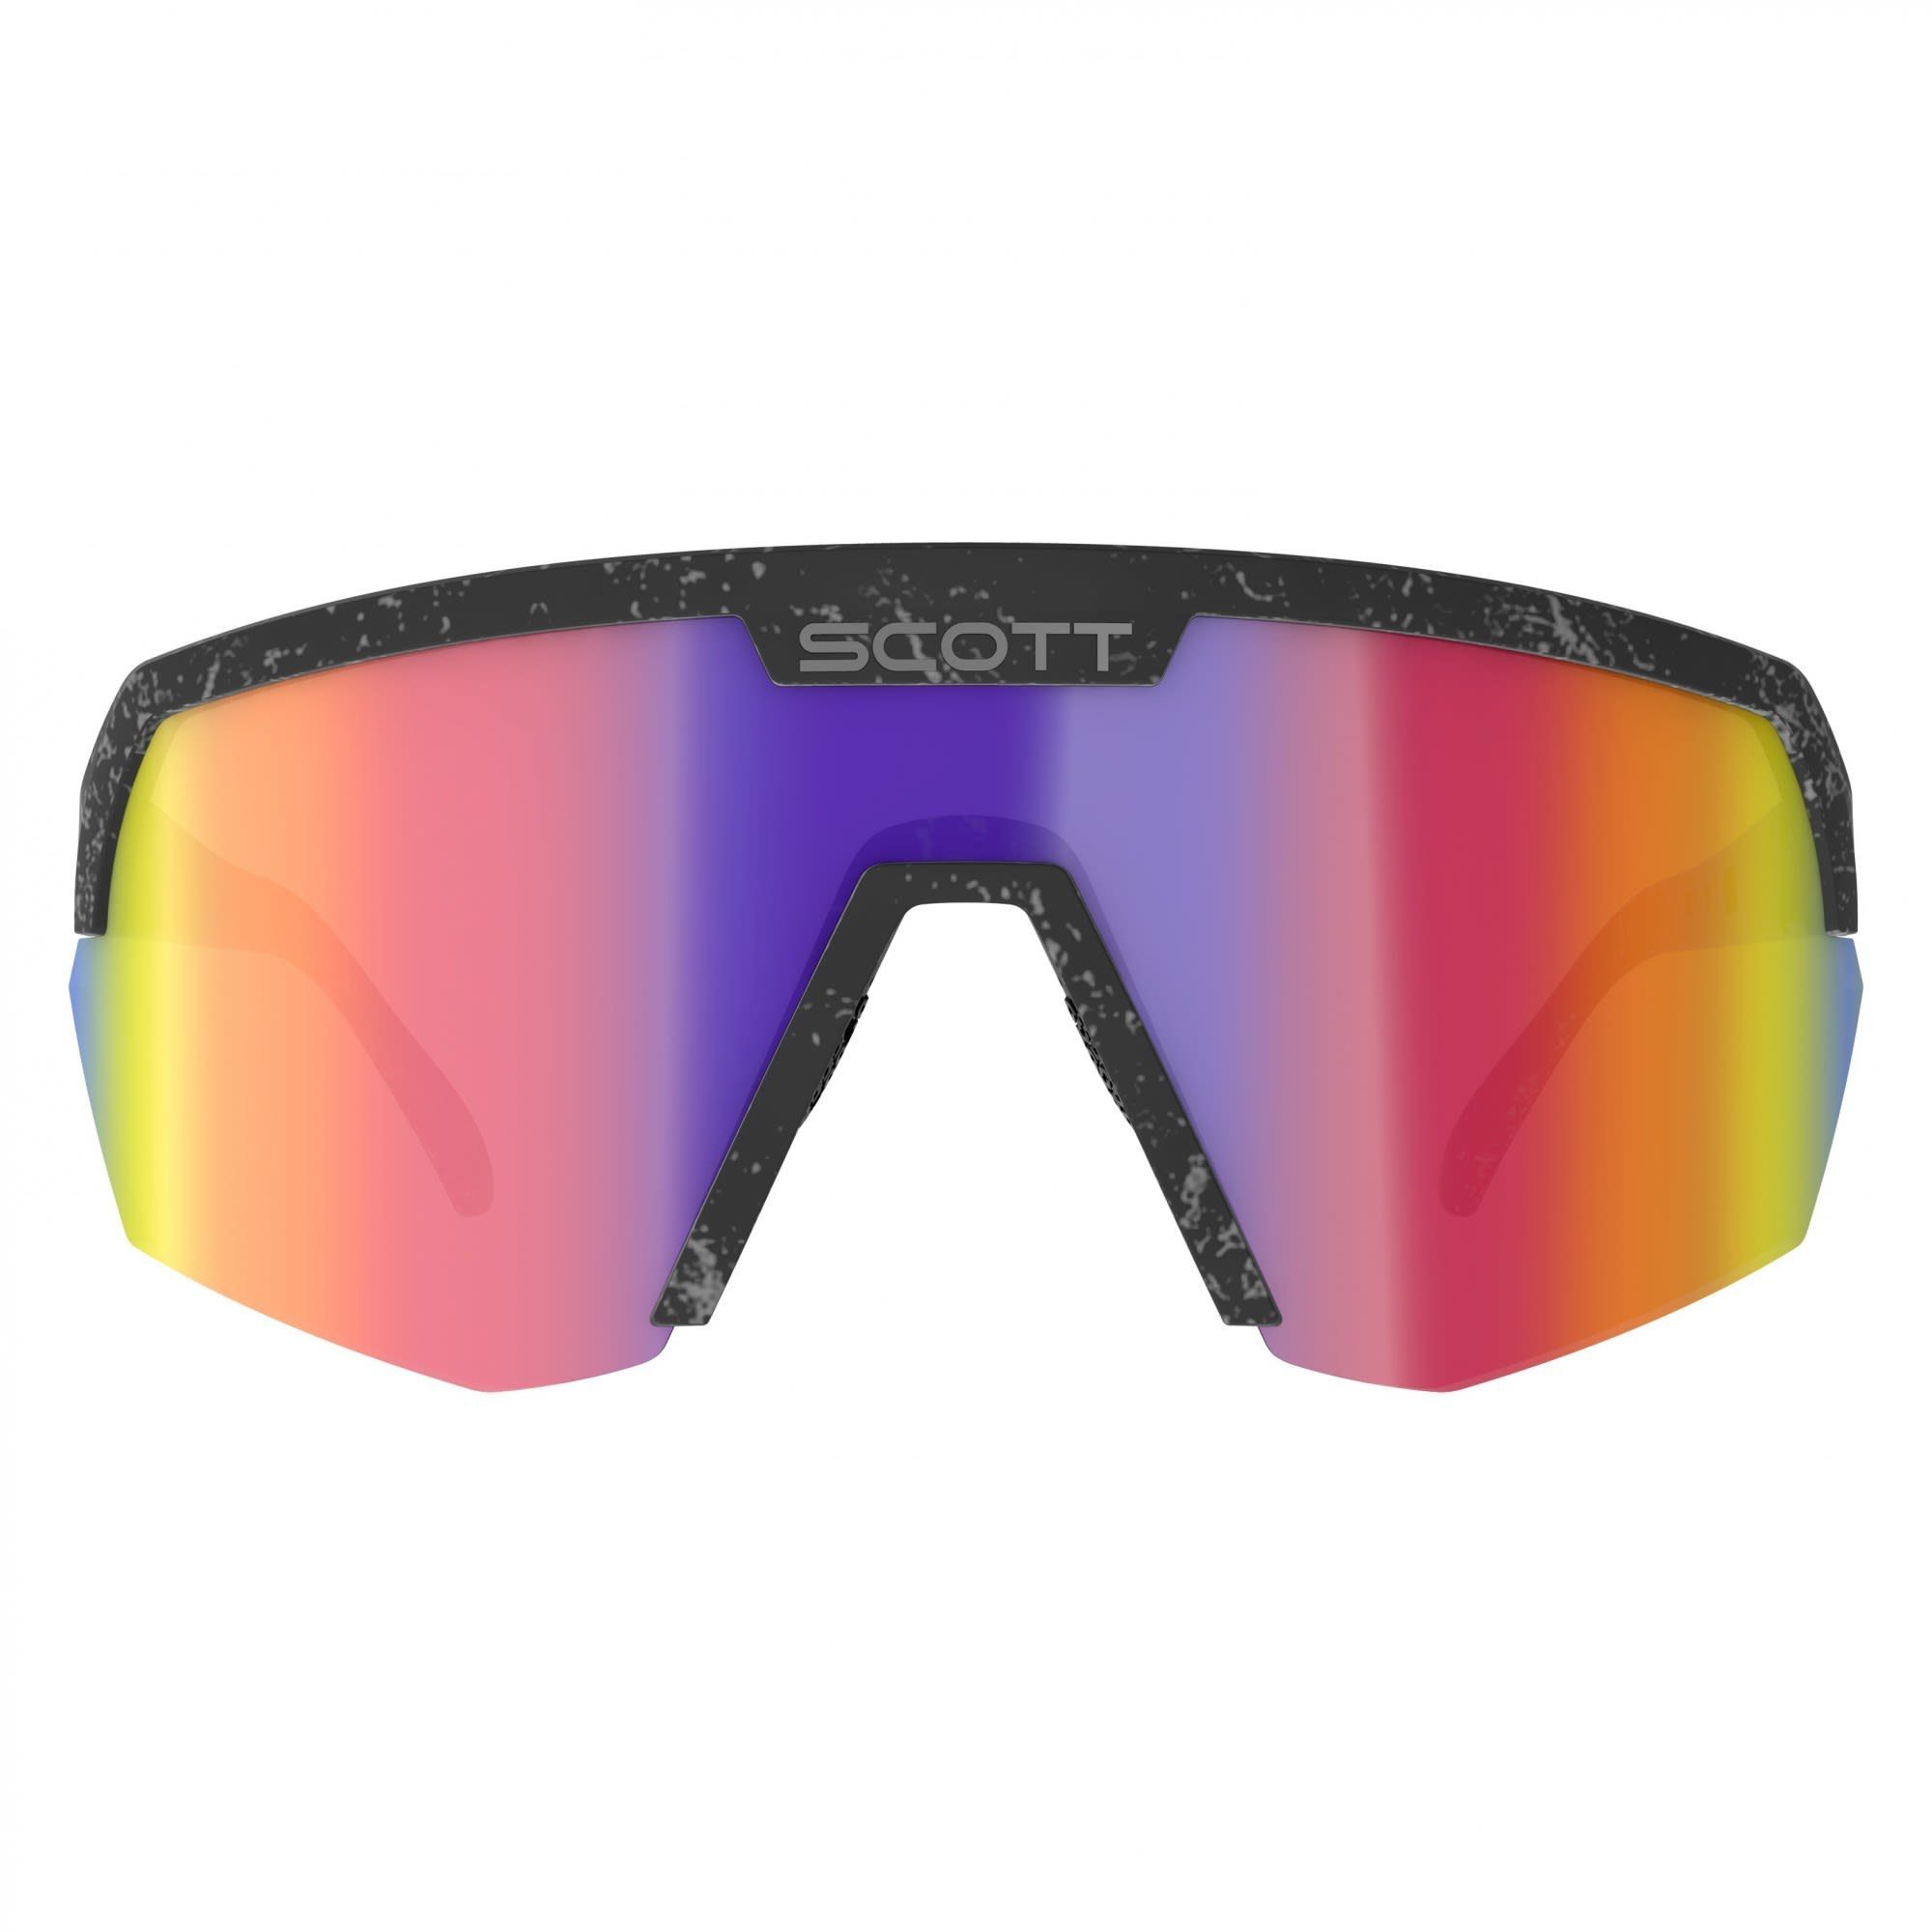 Scott Fahrradbrille Scott Teal Black Sunglasses Marble - Shield Sport Chrome Accessoires